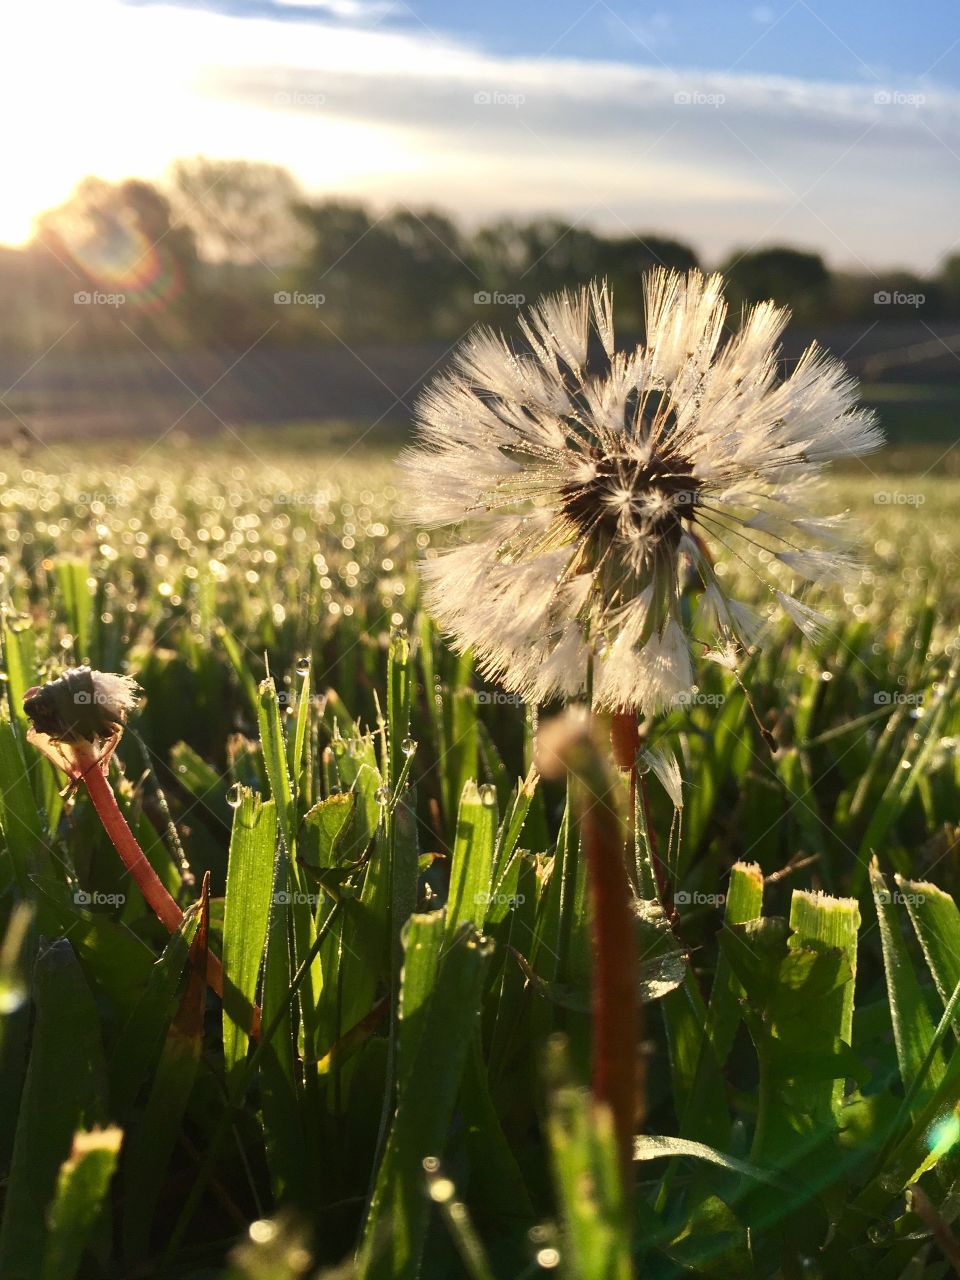 Dandelion flower in field